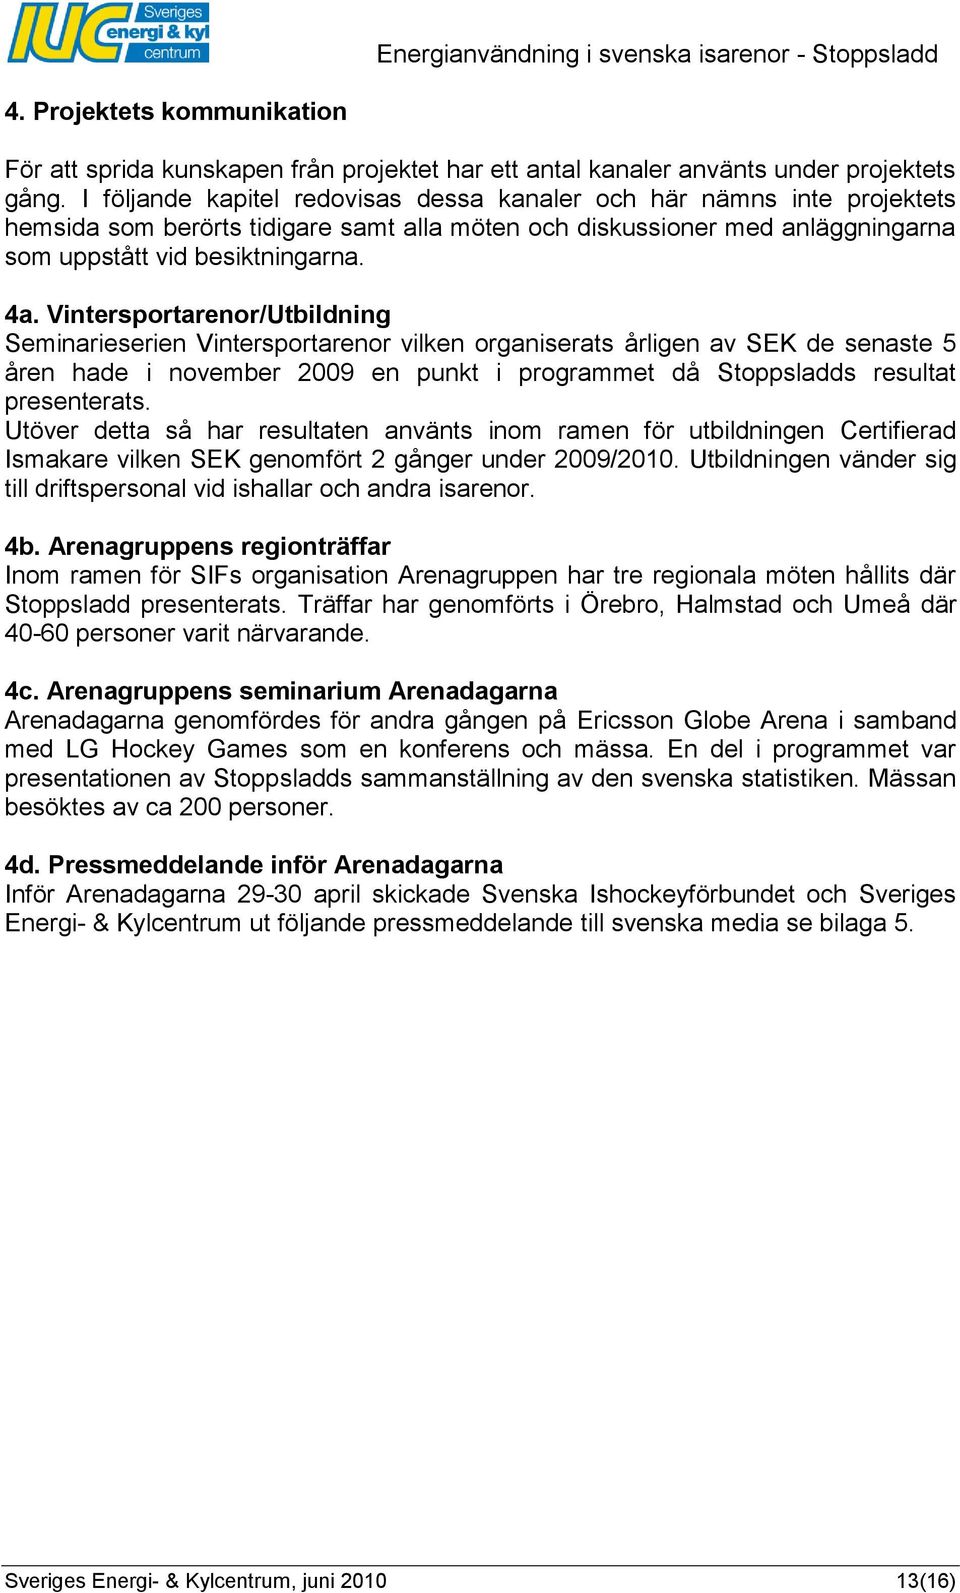 Vintersportarenor/Utbildning Seminarieserien Vintersportarenor vilken organiserats årligen av SEK de senaste 5 åren hade i november 2009 en punkt i programmet då Stoppsladds resultat presenterats.